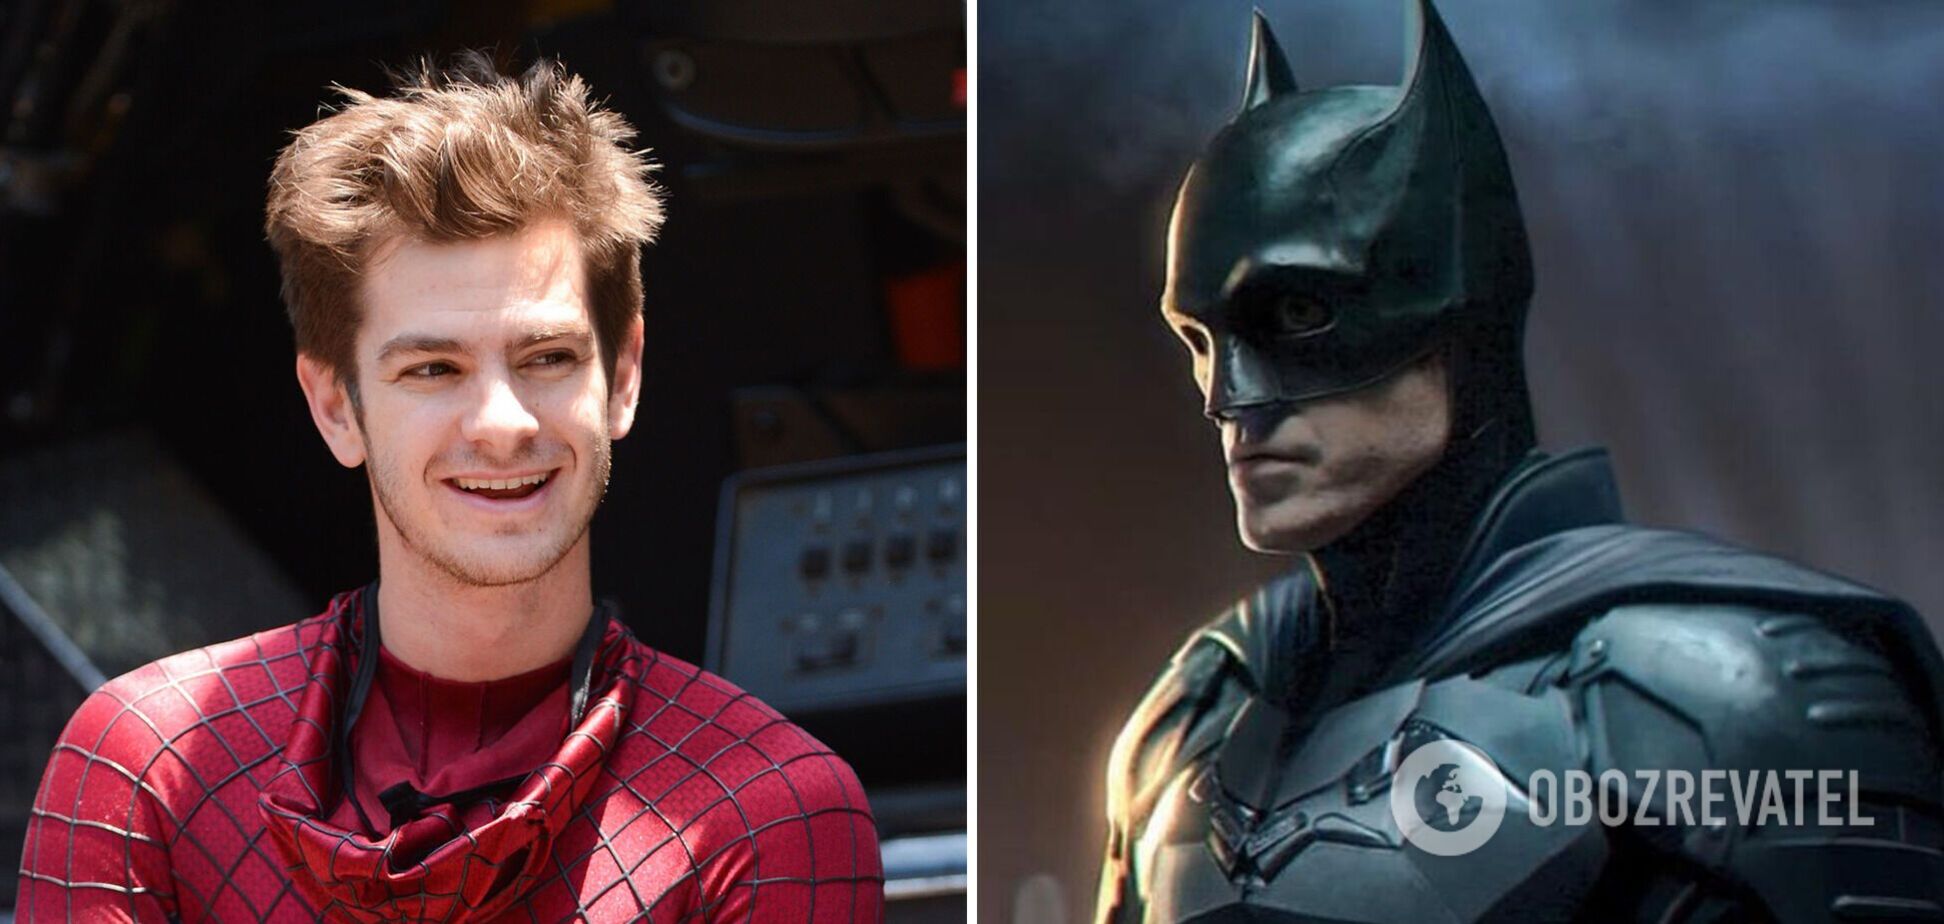 'Человек-паук', 'Бэтмен' и другие фильмы, где одного героя сыграли несколько актеров